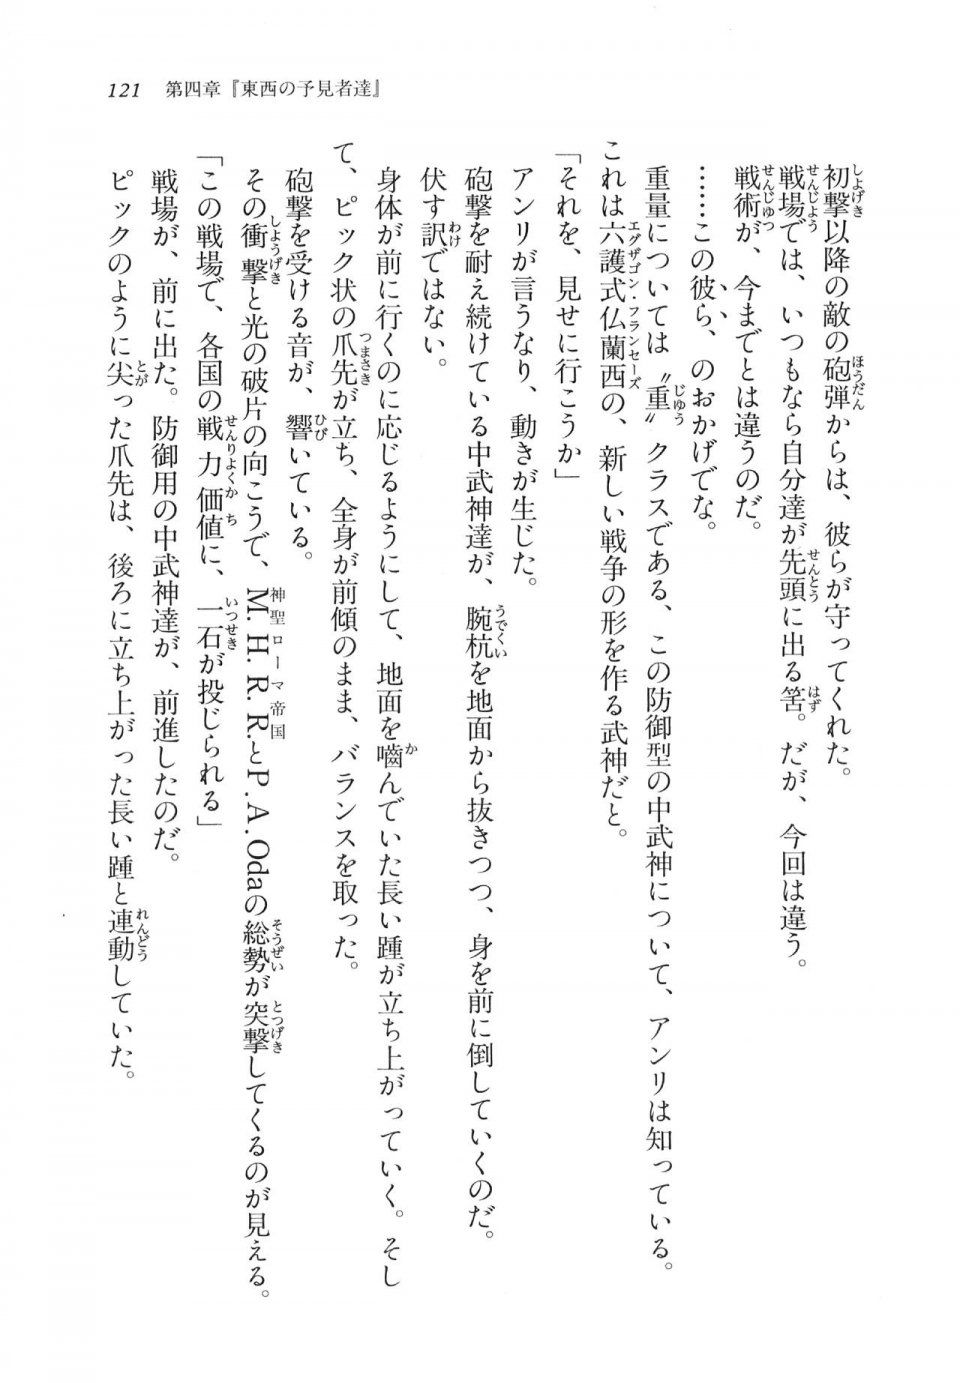 Kyoukai Senjou no Horizon LN Vol 11(5A) - Photo #121